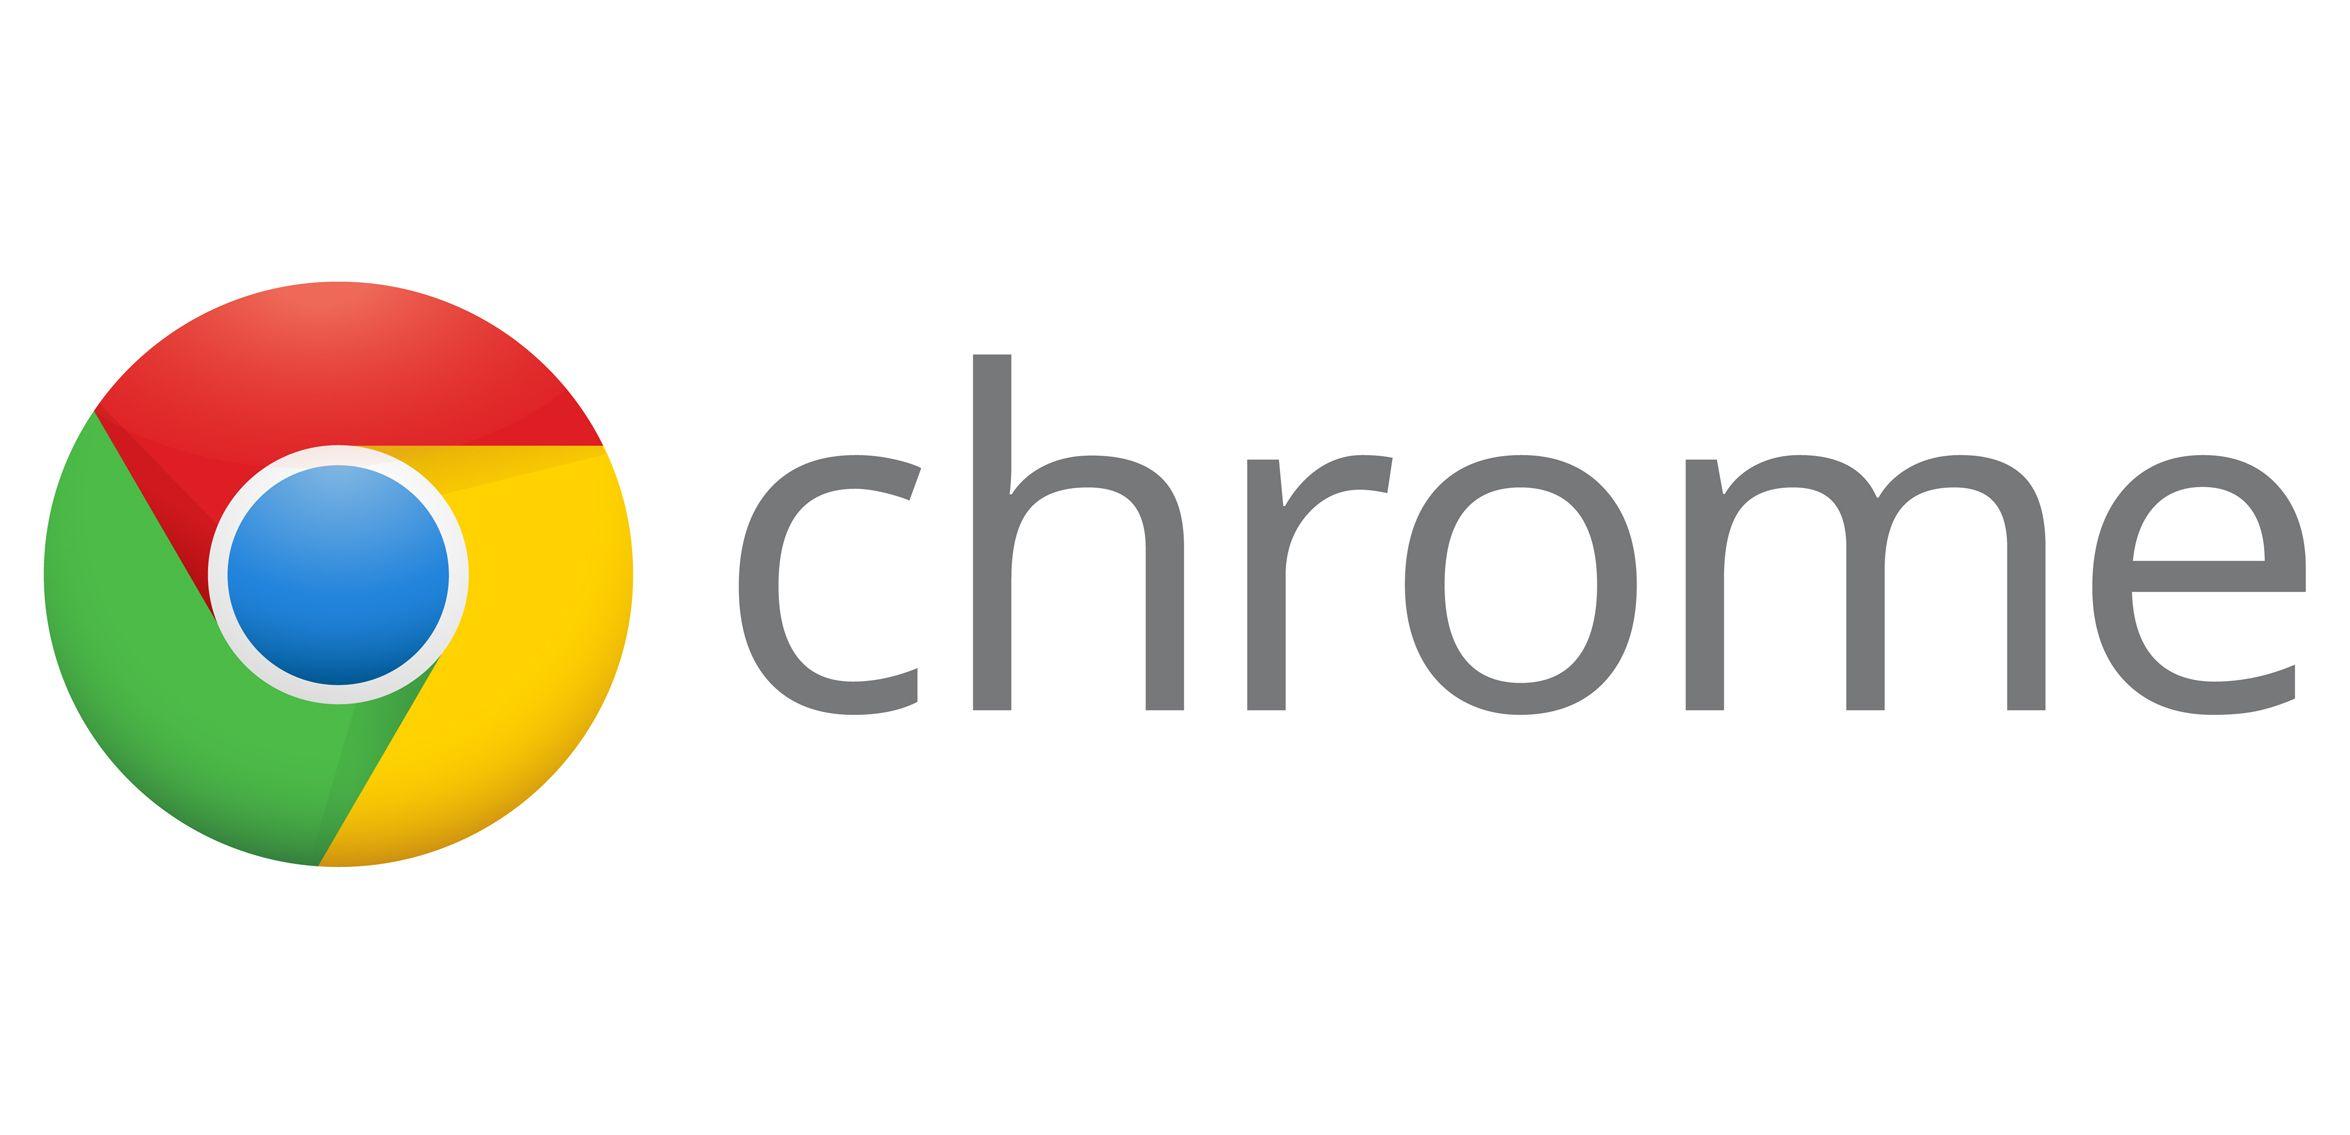 Original Chrome Logo - Chrome Logo, Chrome Symbol, Meaning, History and Evolution